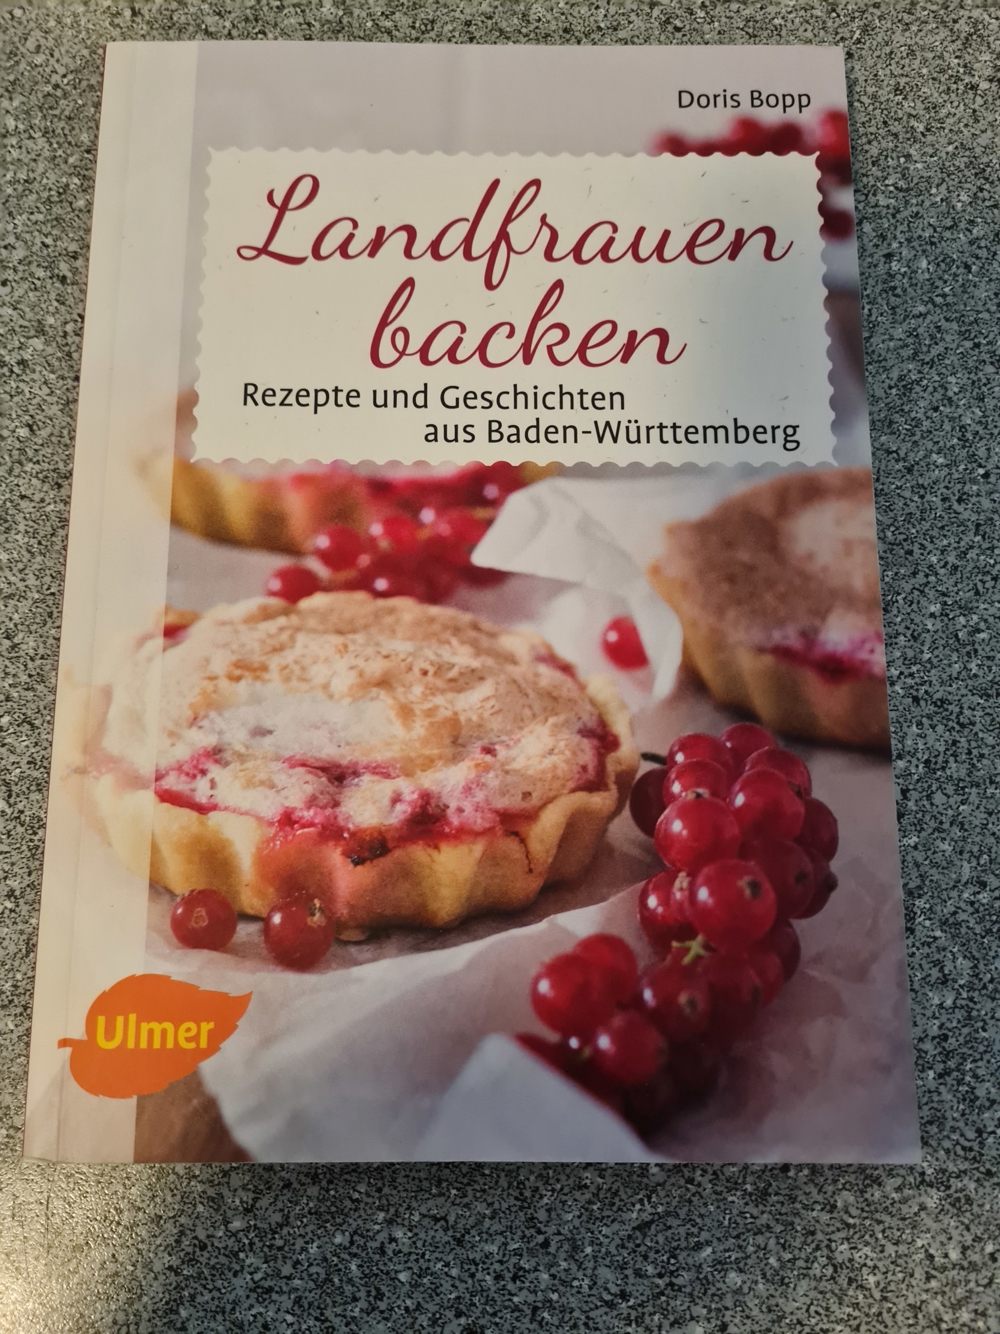 Backbuch "Landfrauen backen"